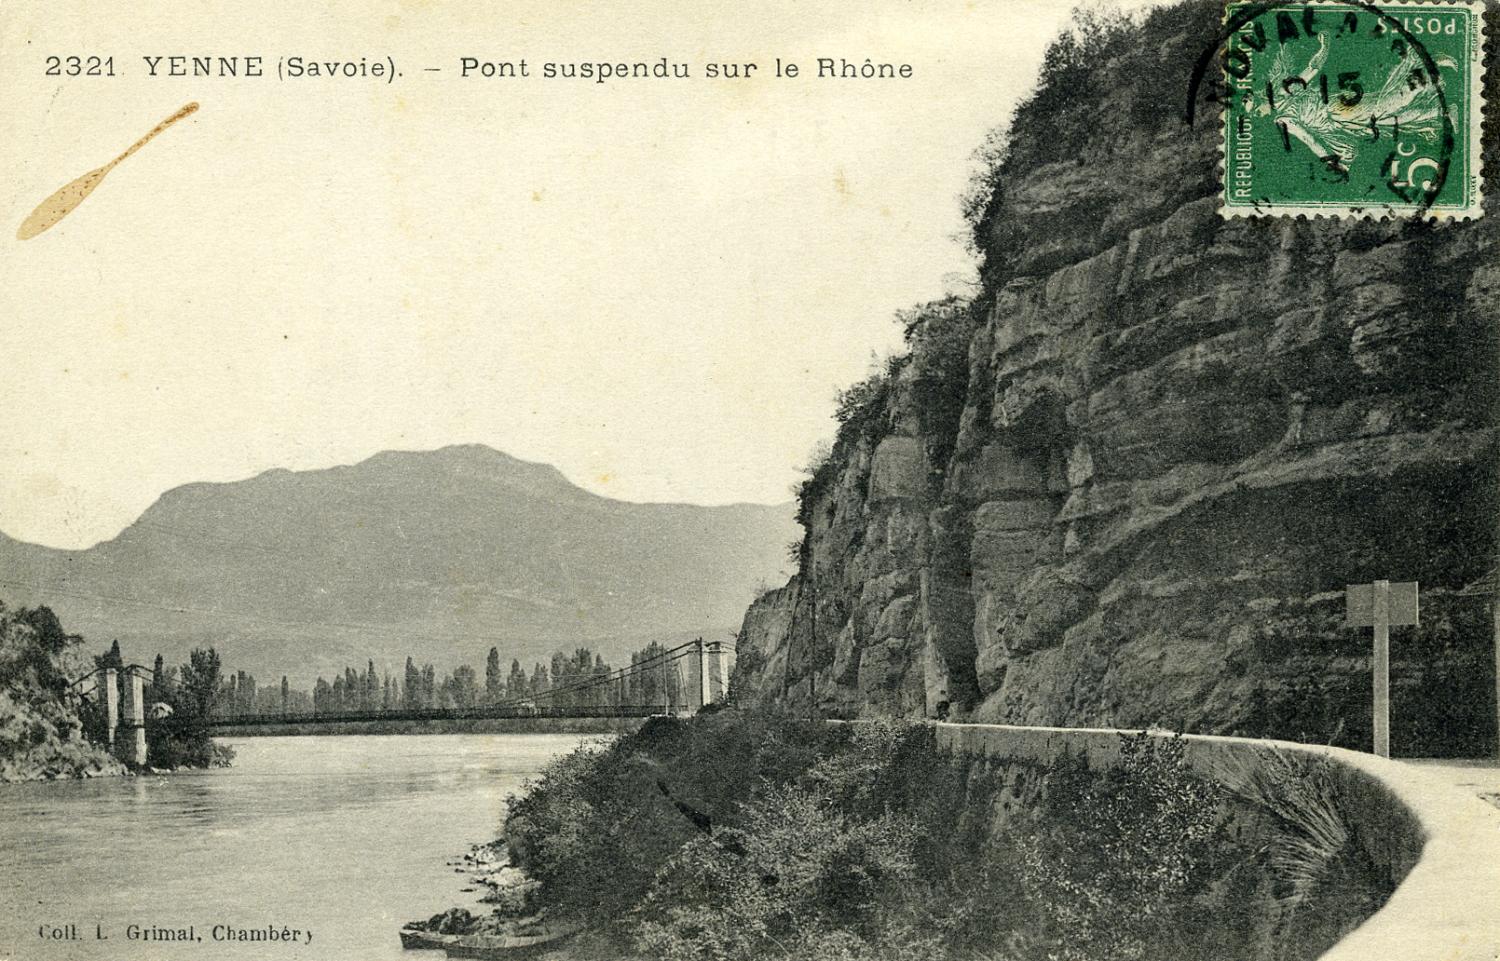 YENNE (Savoie) - Pont suspendu sur le Rhône